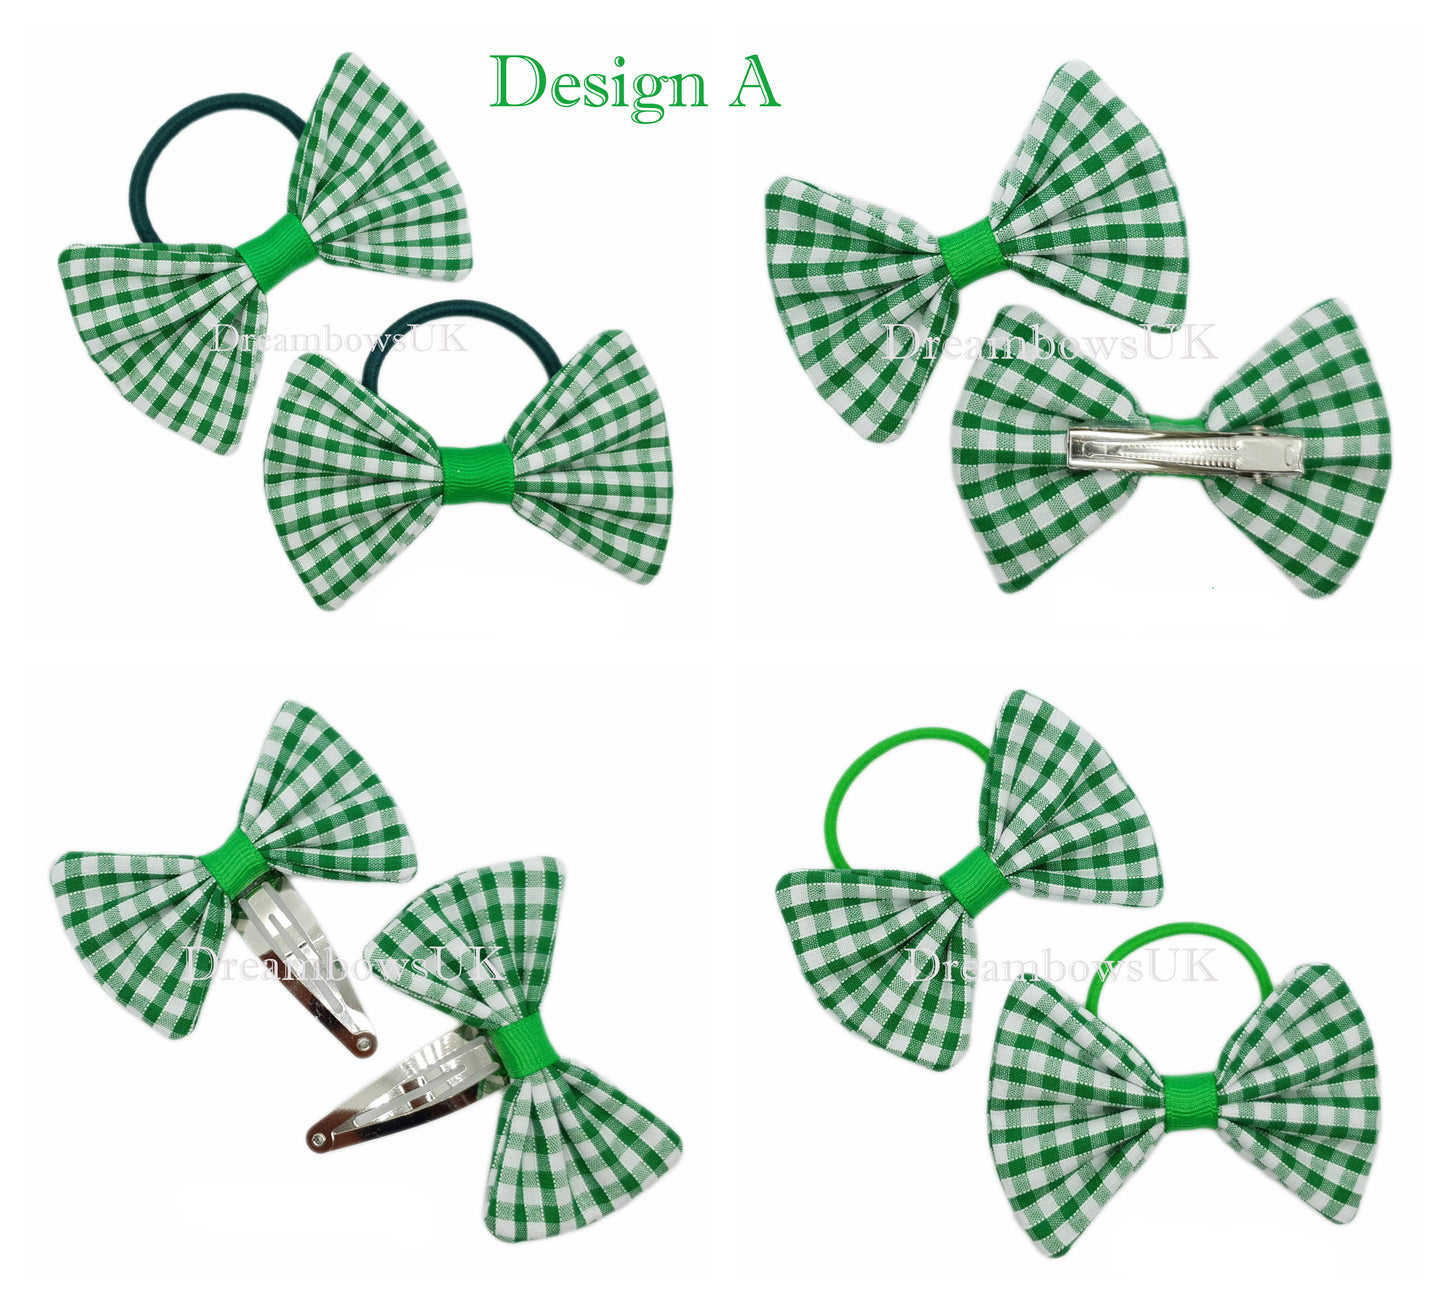 2x Emerald green gingham hair bows